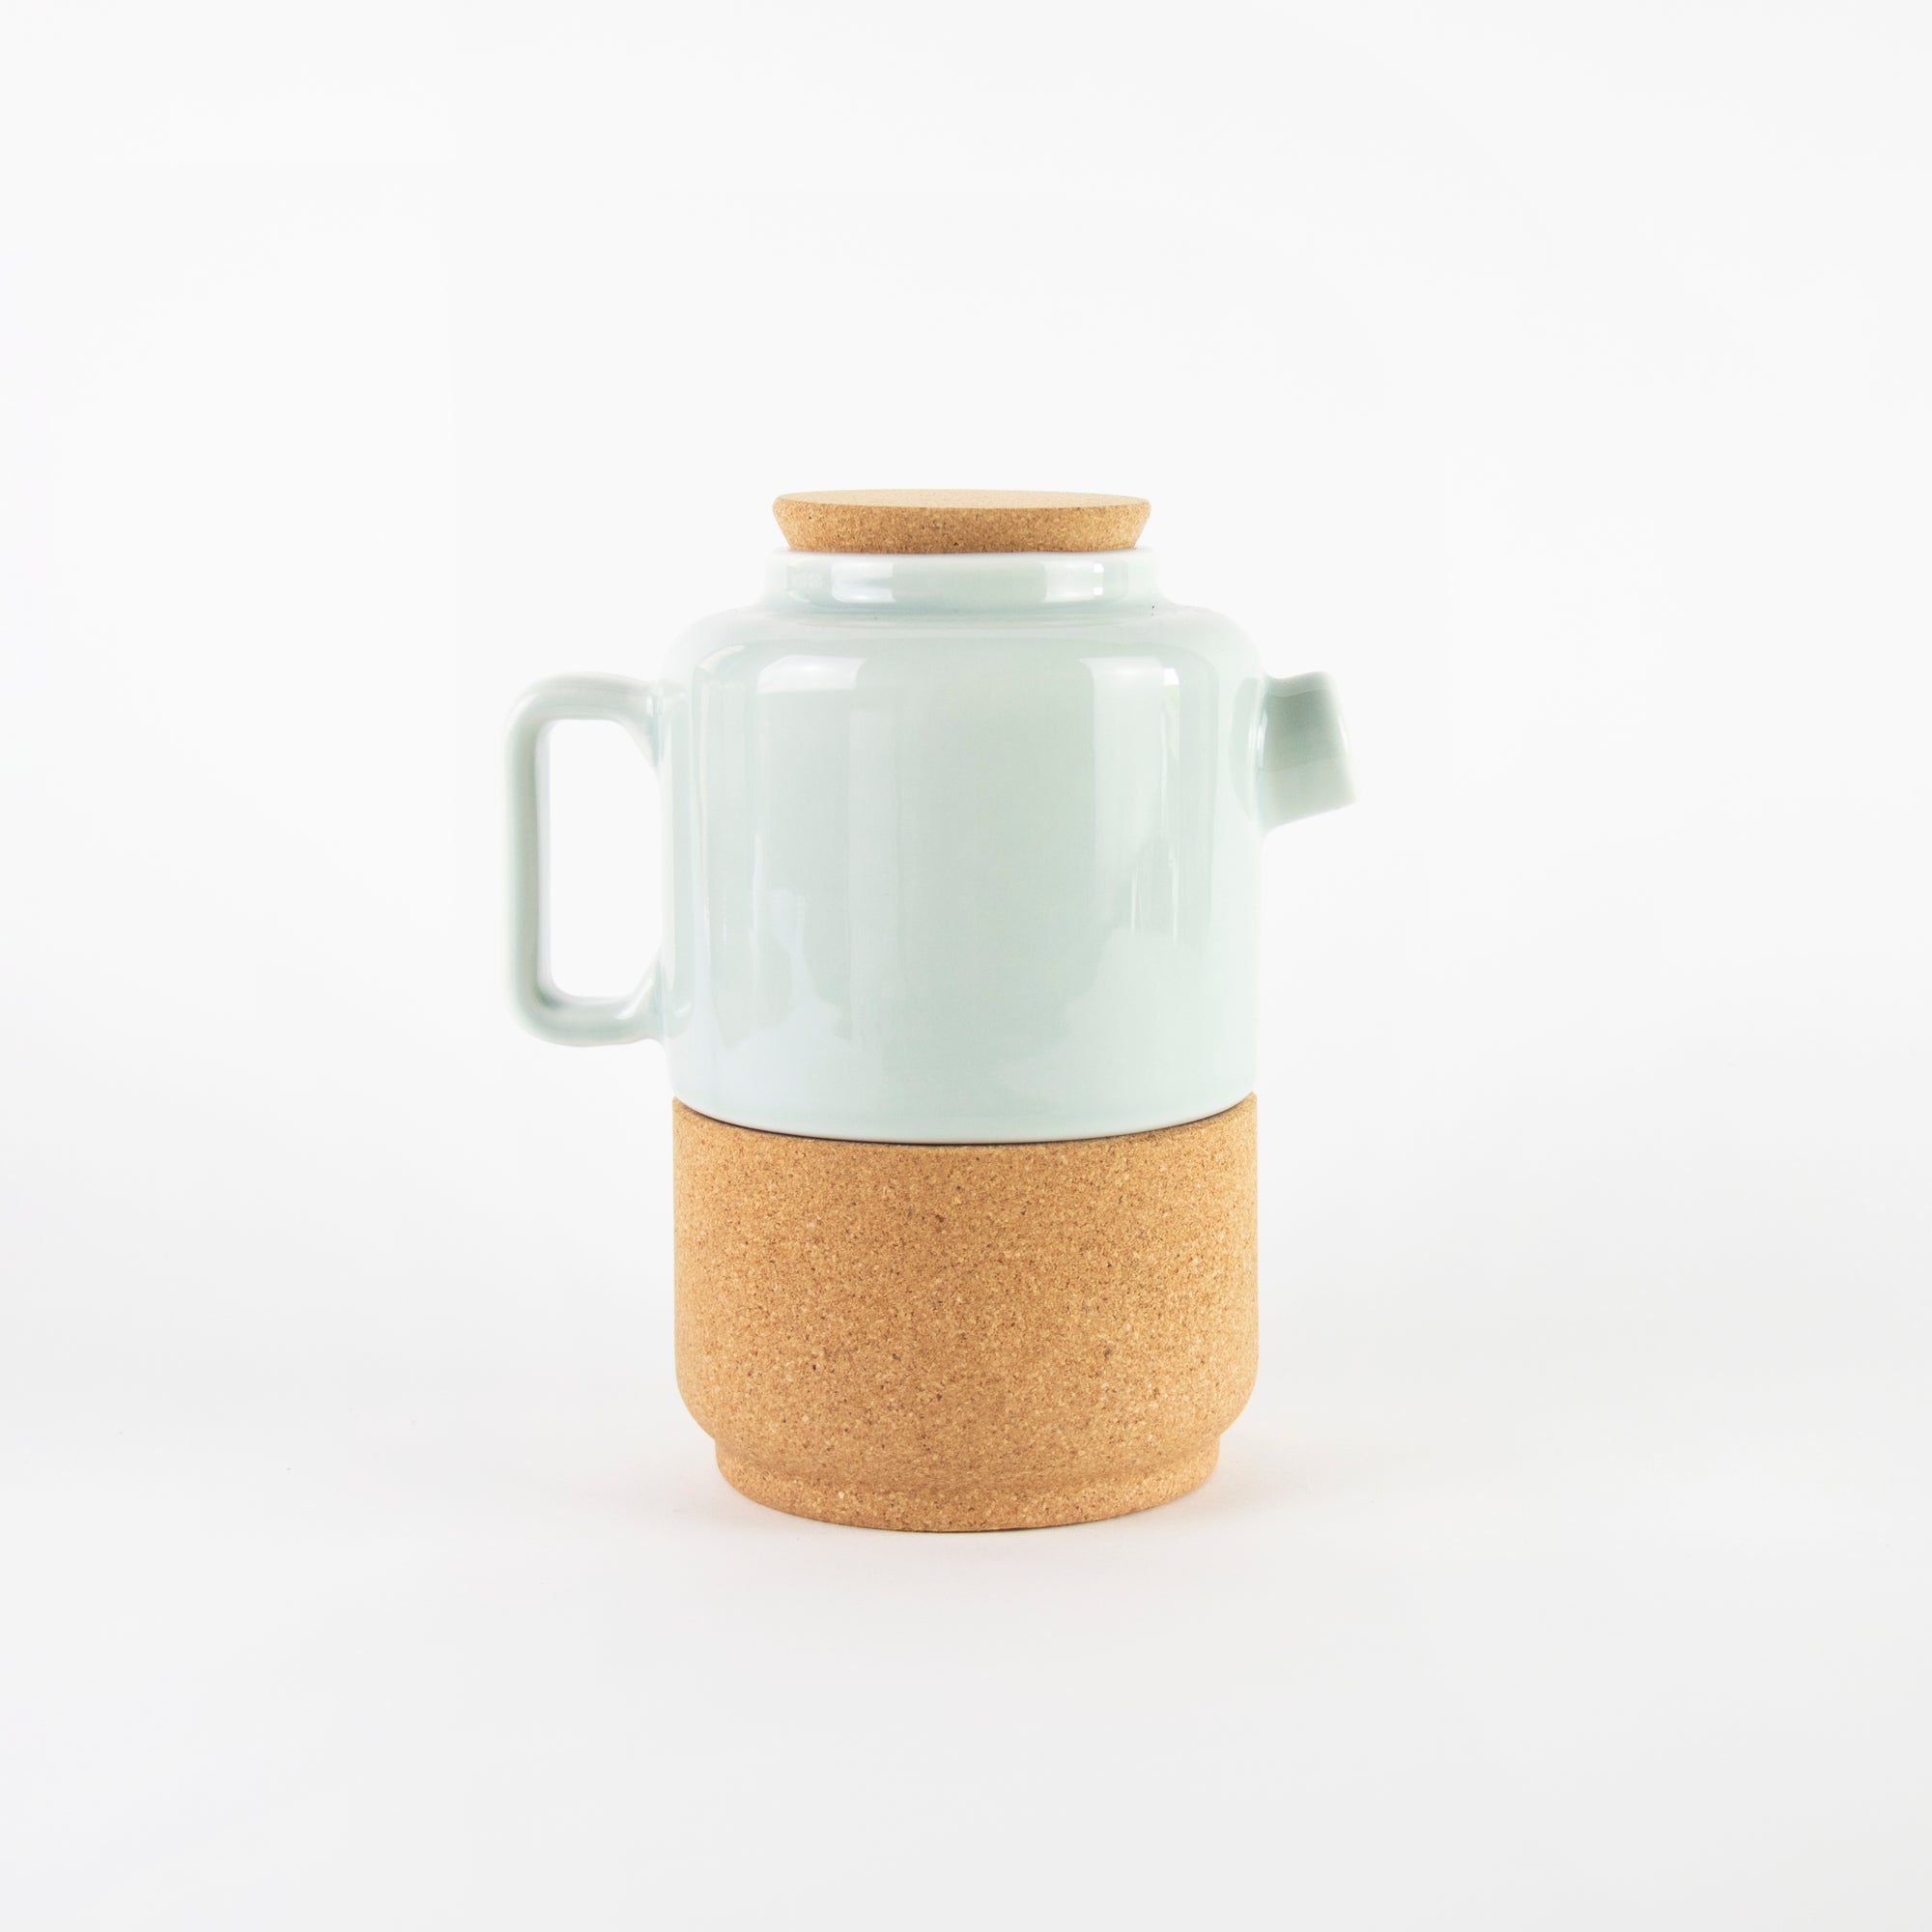 Sustainable ceramic and cork teapot in Aqua